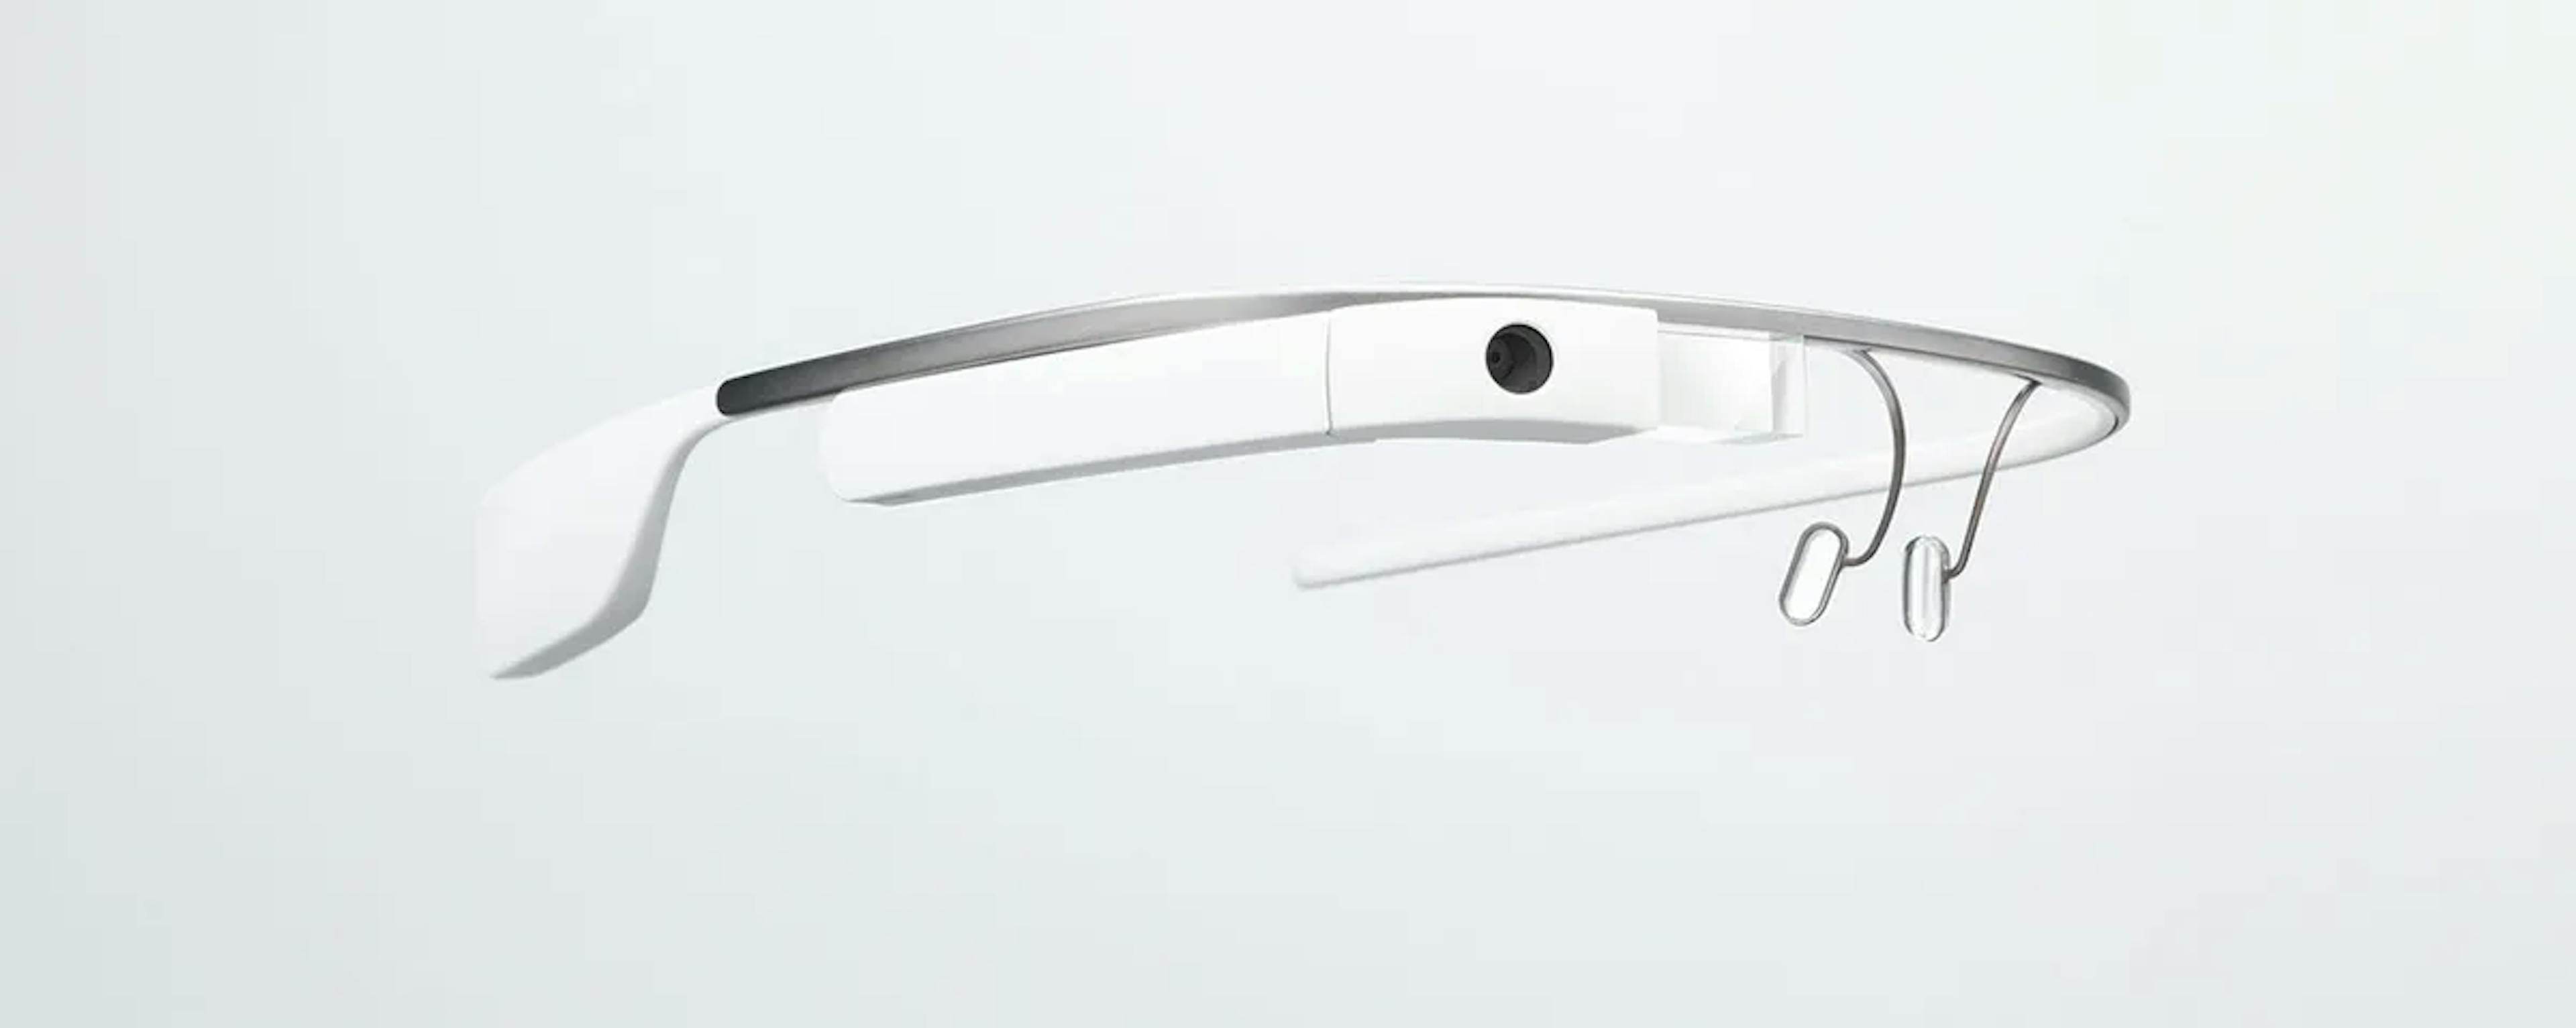  O Google Glass em questão